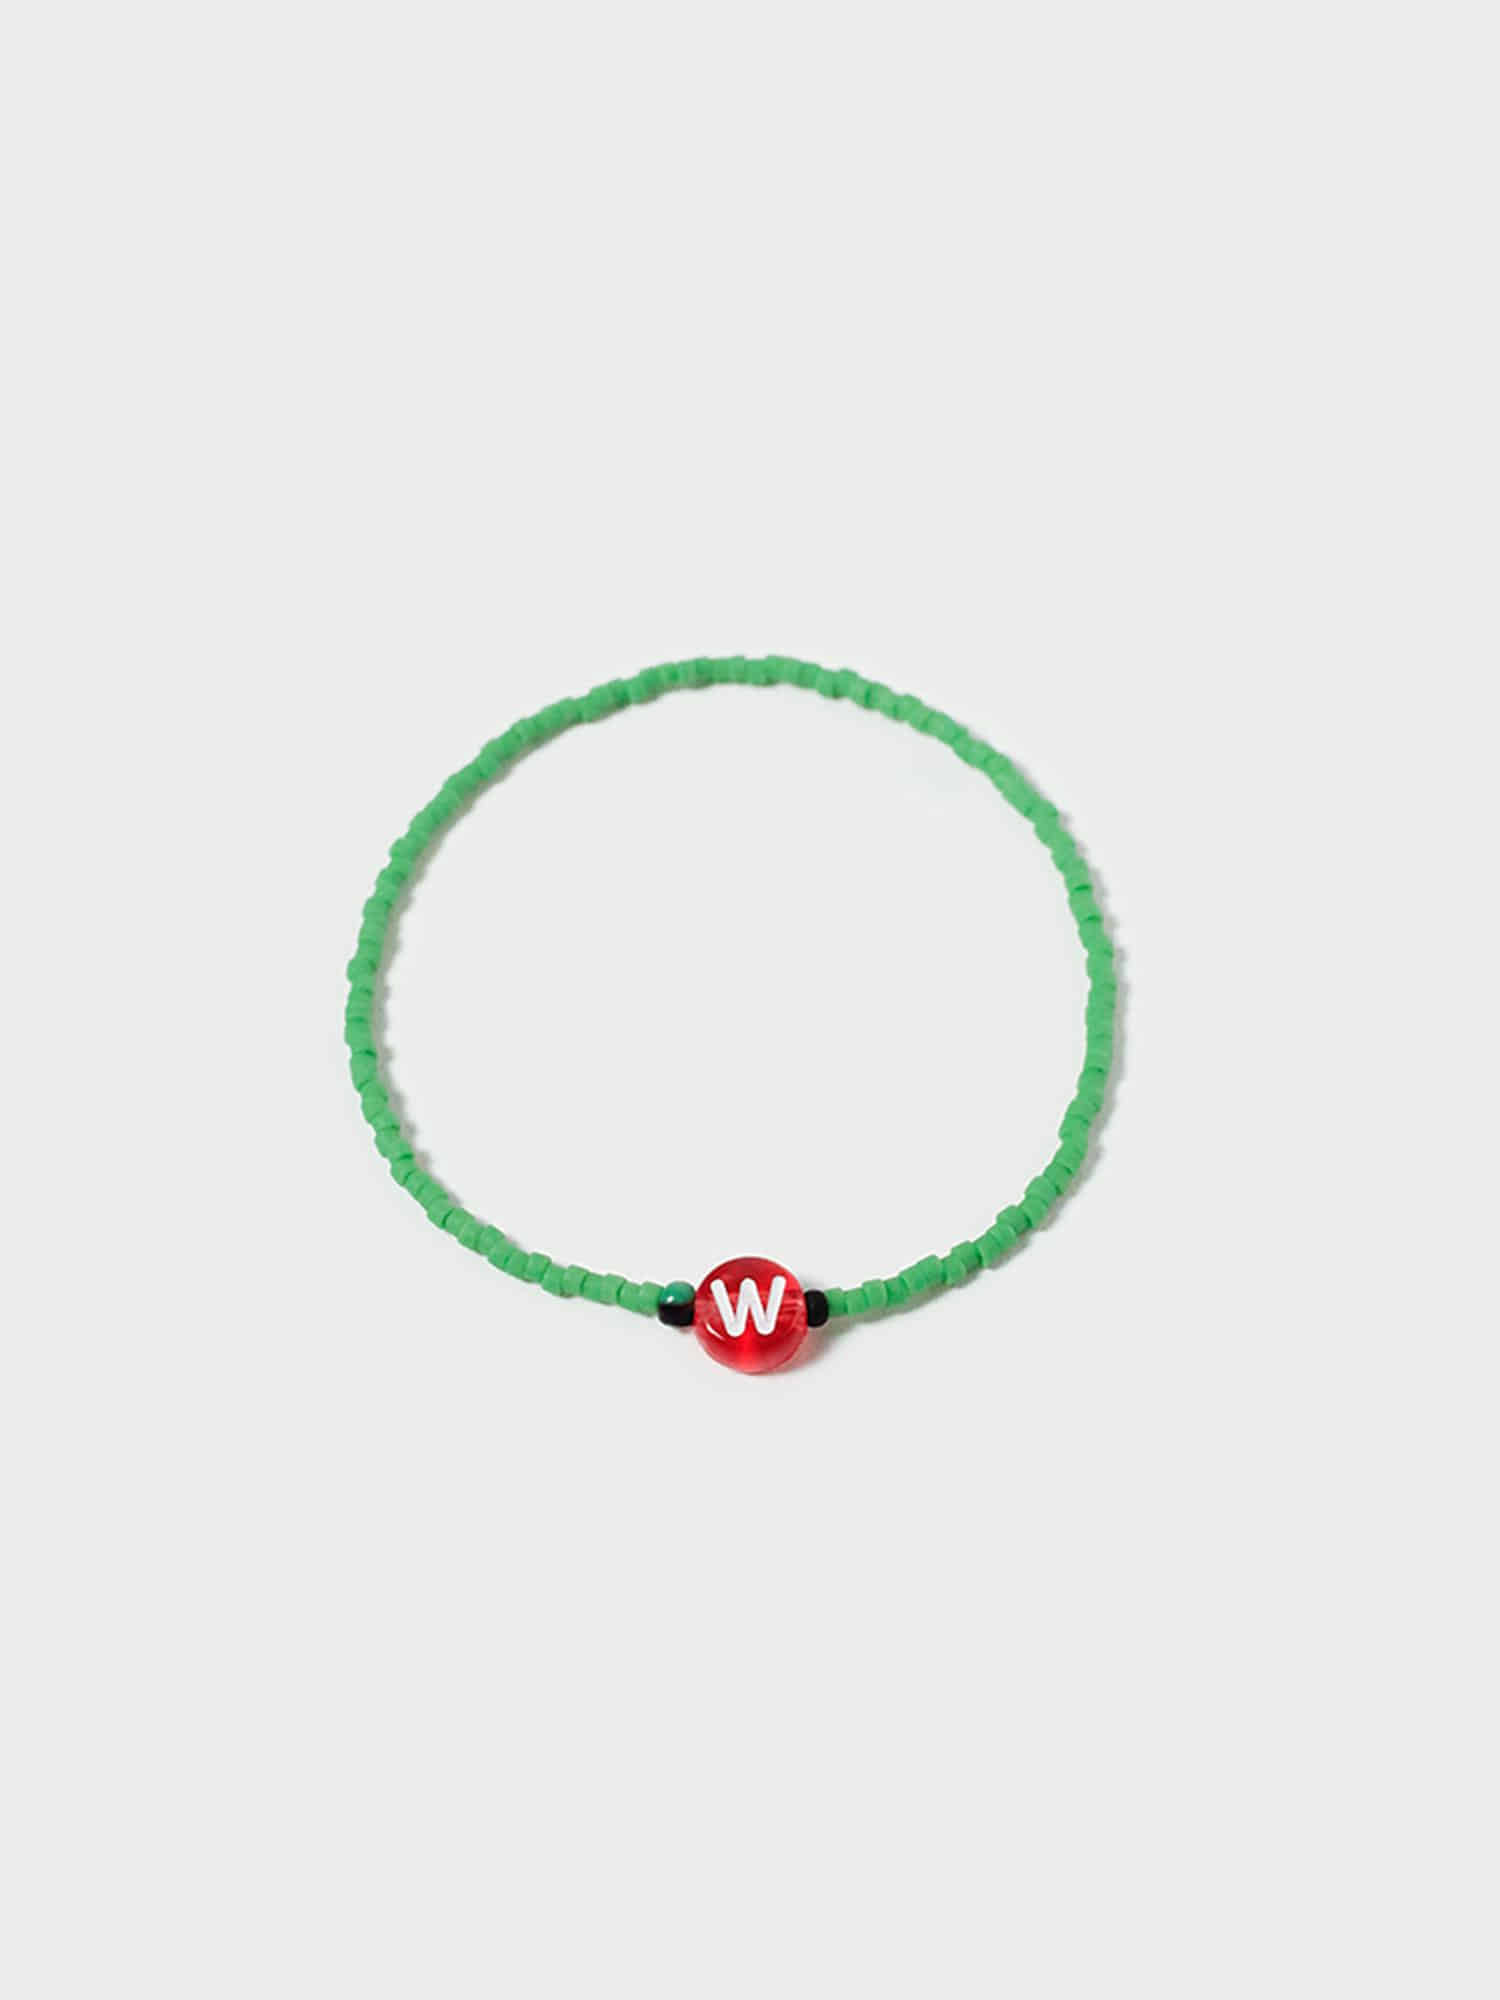 Happy Your Bracelet [ W ]